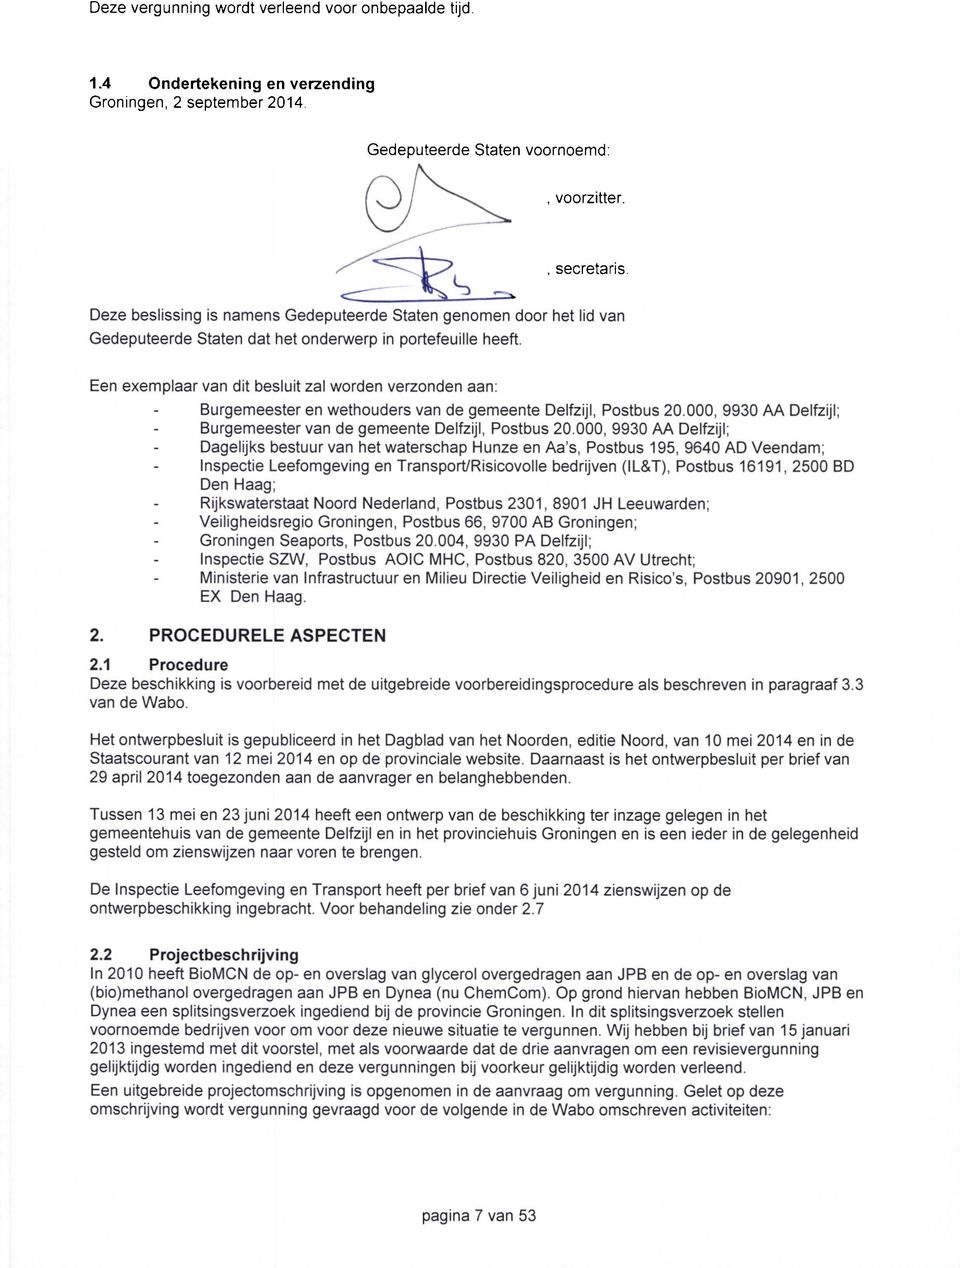 Een exemplaar van dit besluit zal worden verzonden aan: Burgemeester en wethouders van de gemeente Delfzijl, Postbus 20.000, 9930 AA Delfzijl; Burgemeester van de gemeente Delfzijl, Postbus 20.